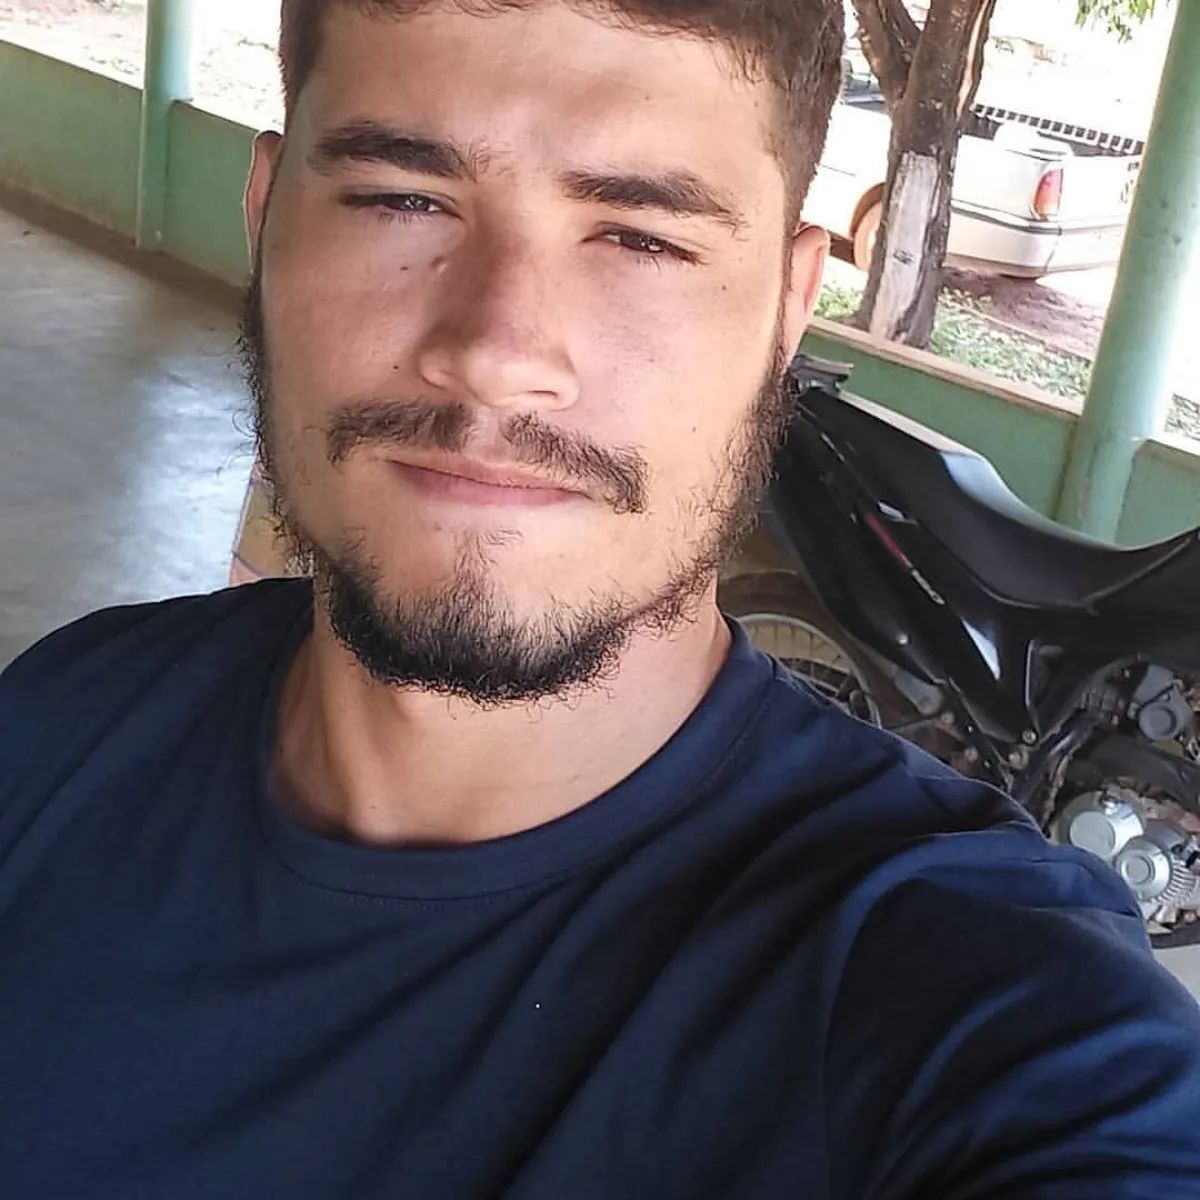 Filho de prefeita em Goiás morre eletrocutado ao reformar escola